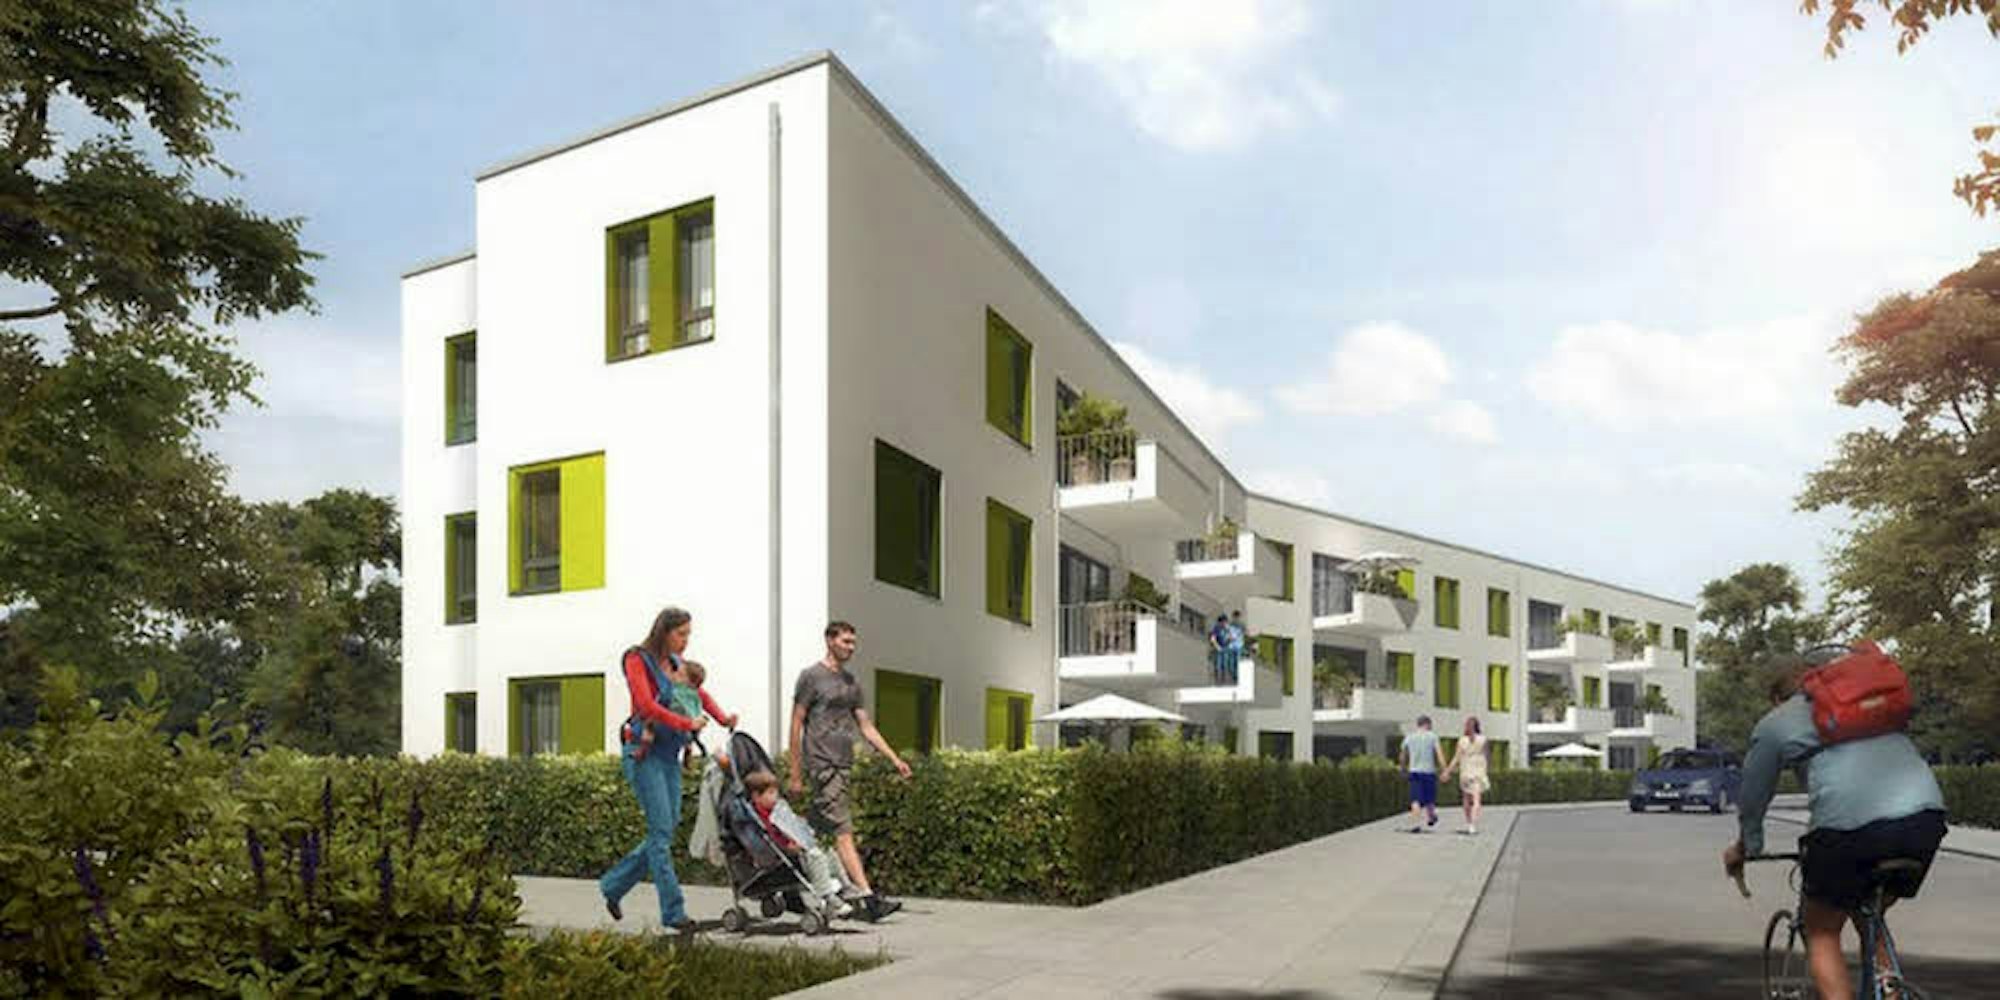 Auf einer Grünfläche zwischen Industrie-, Wattignies- und Josef-Kallscheuer-Straße wird das neue Haus für Flüchtlinge gebaut.